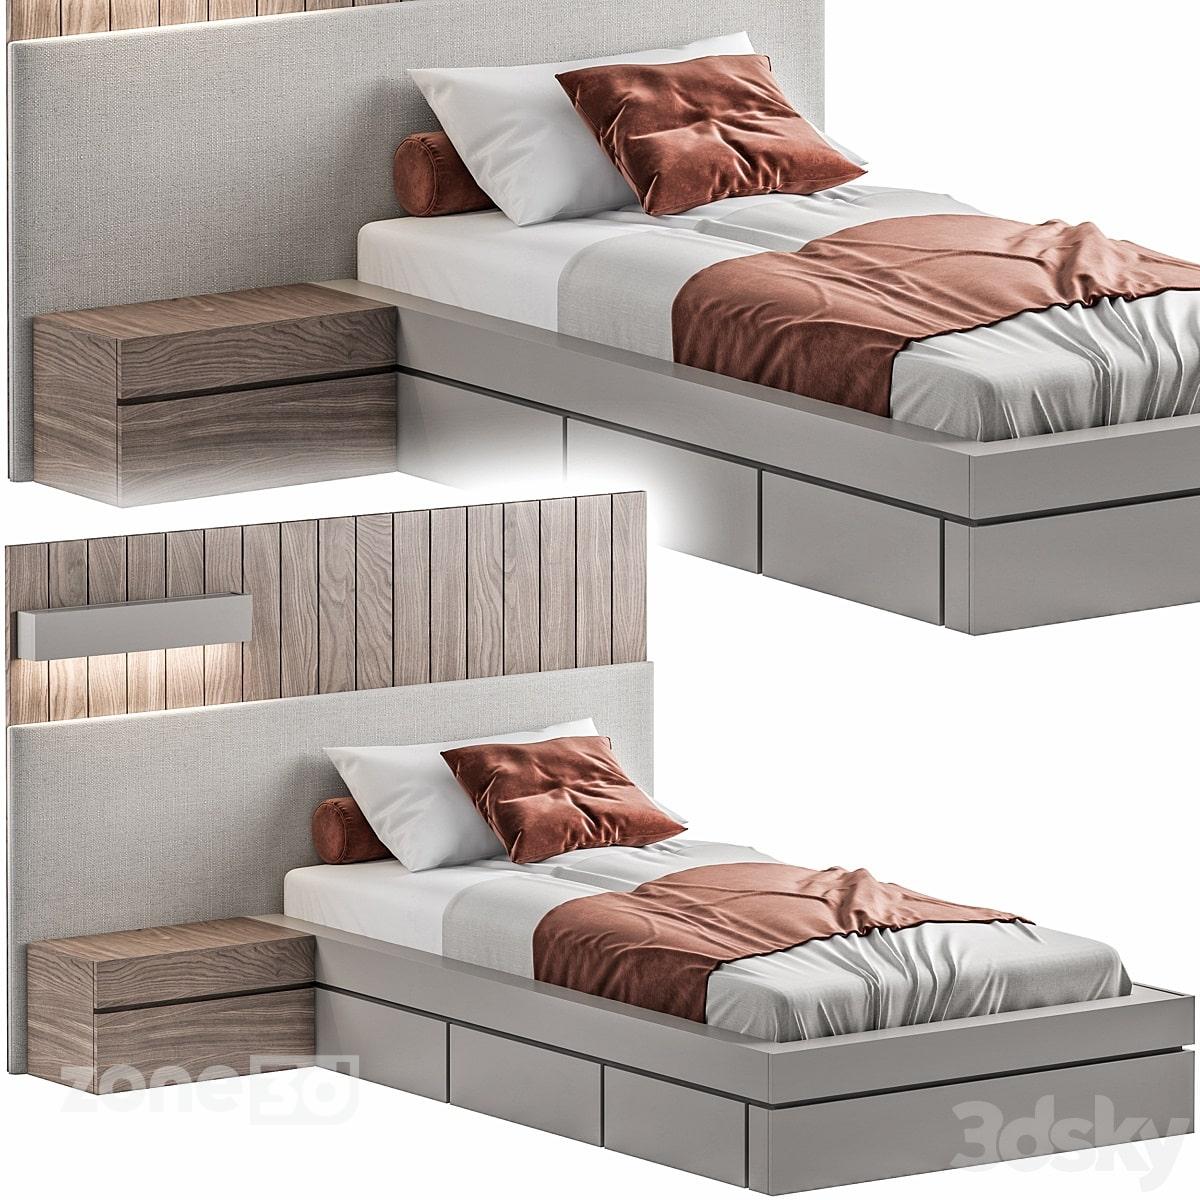 آبجکت تخت خواب تک نفره راحتی مدرن با دیوار پارچه ای و چوبی به همراه میز پاتختی